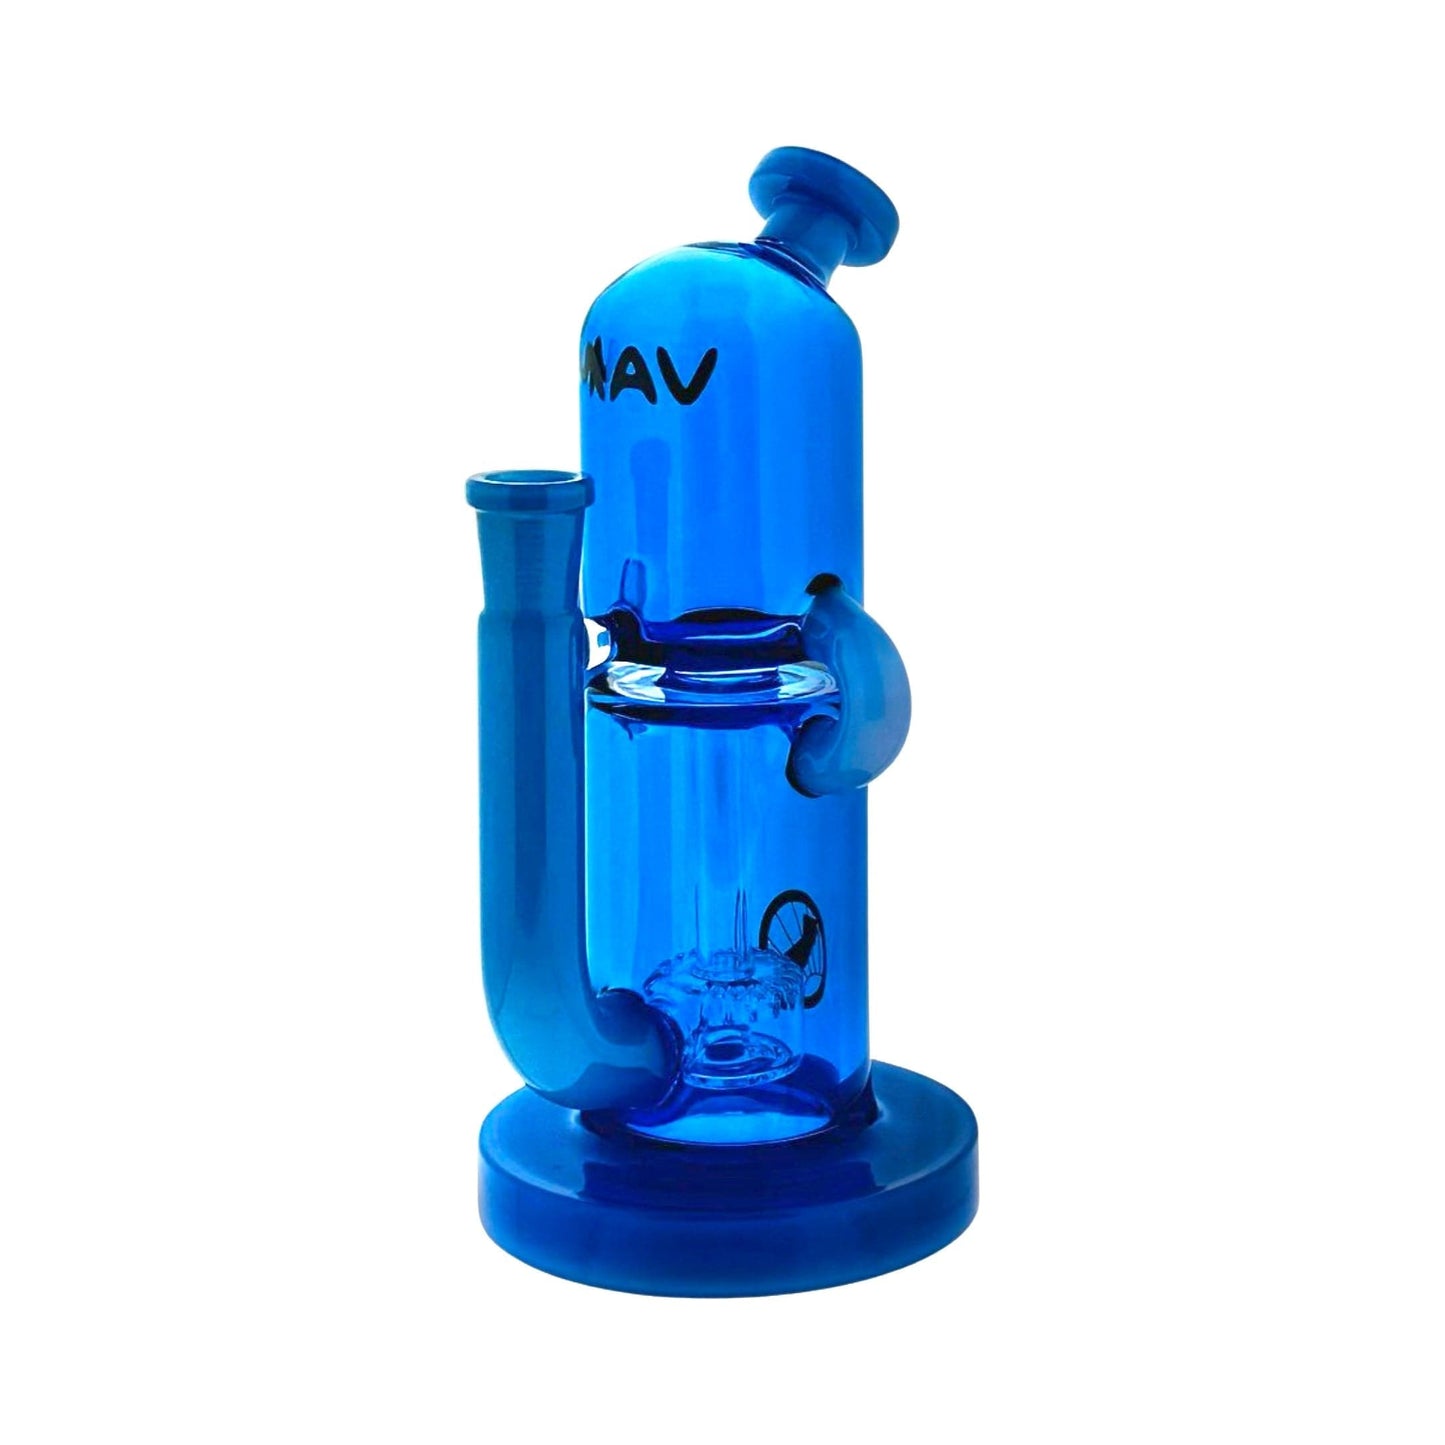 MAV Glass Dab Rig blue and lavender 2-Tone Double Uptake Pillbox Rig